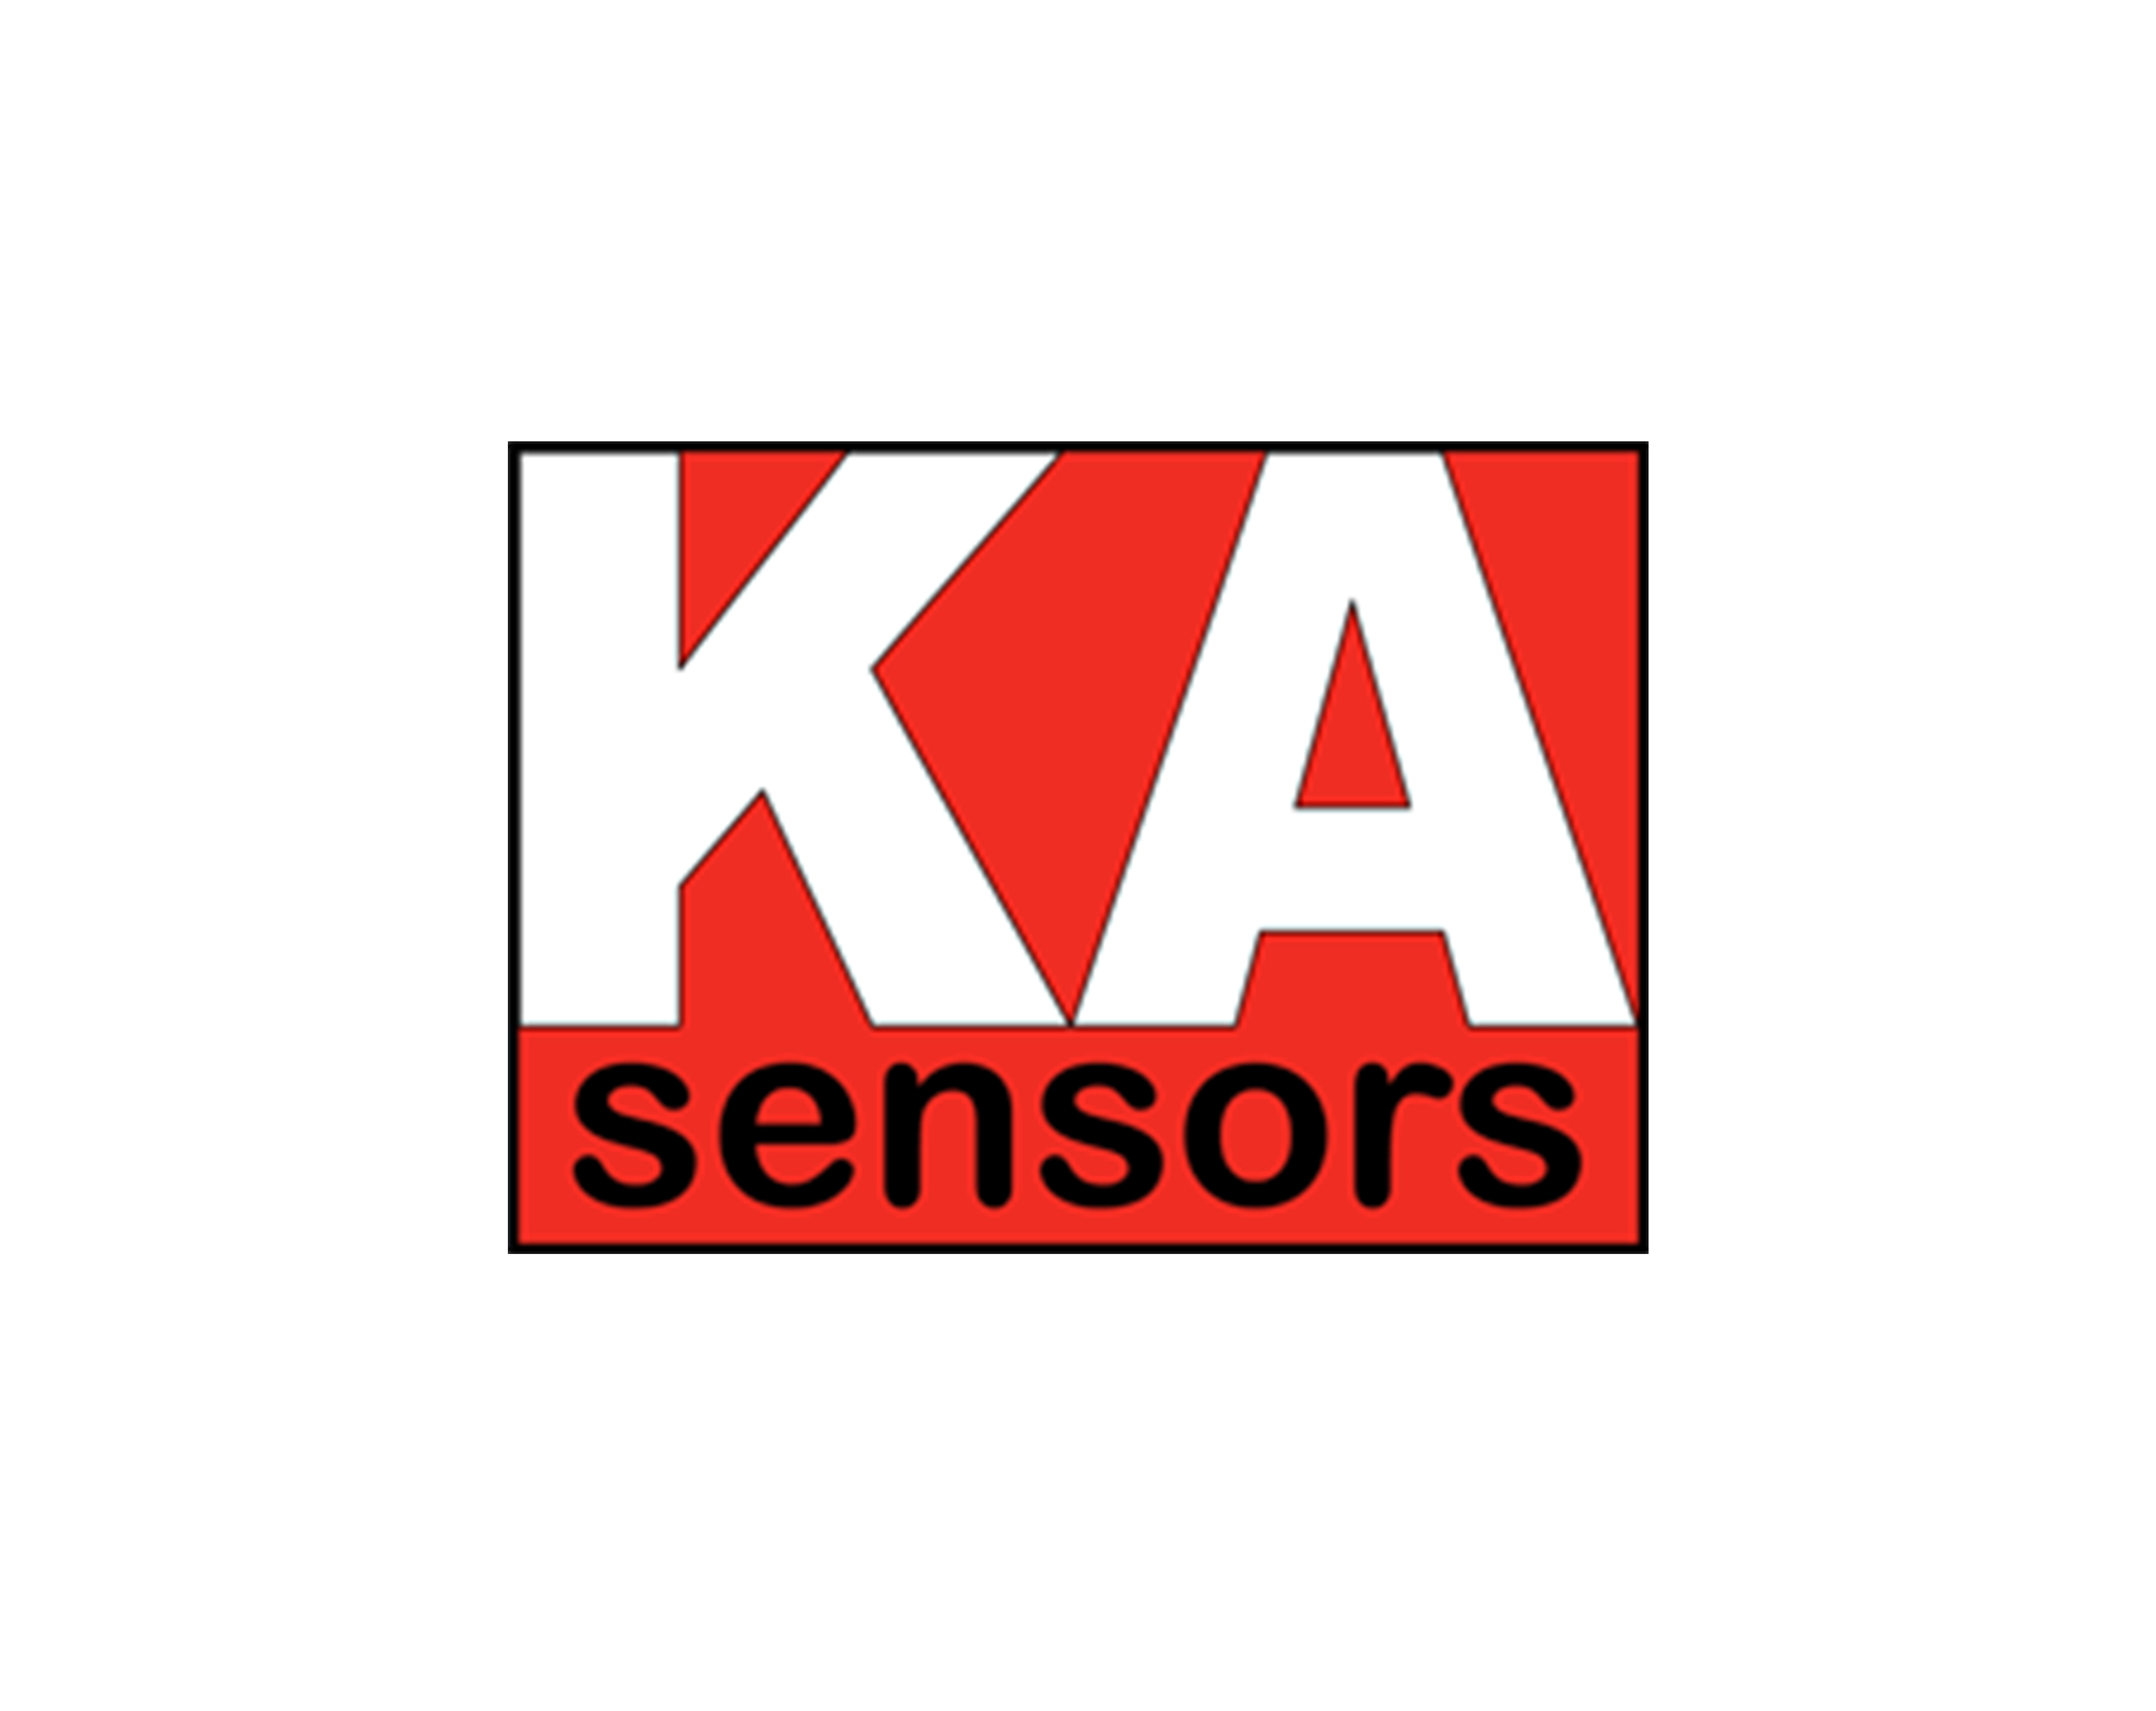 KA sensors